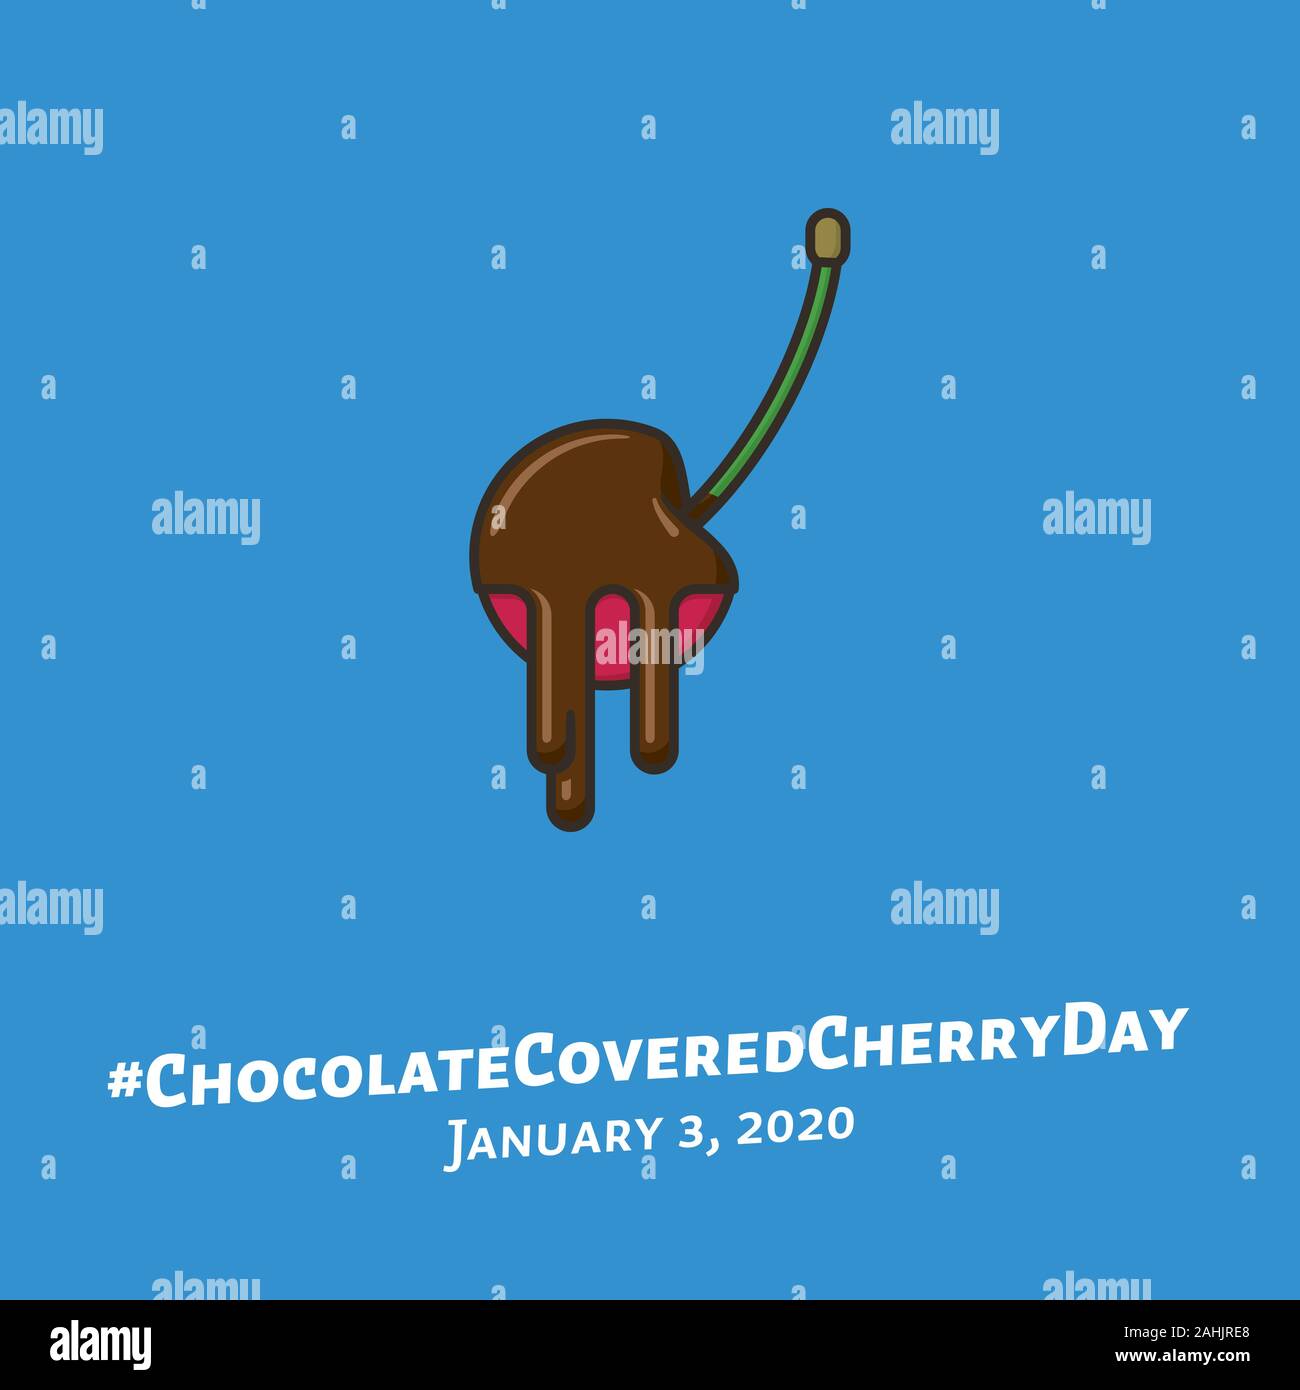 Schokolade kirsche frucht Vector Illustration für #ChocolateCoveredCherryDay am 3. Januar. Essen und Genuss symbol Farbe. Stock Vektor